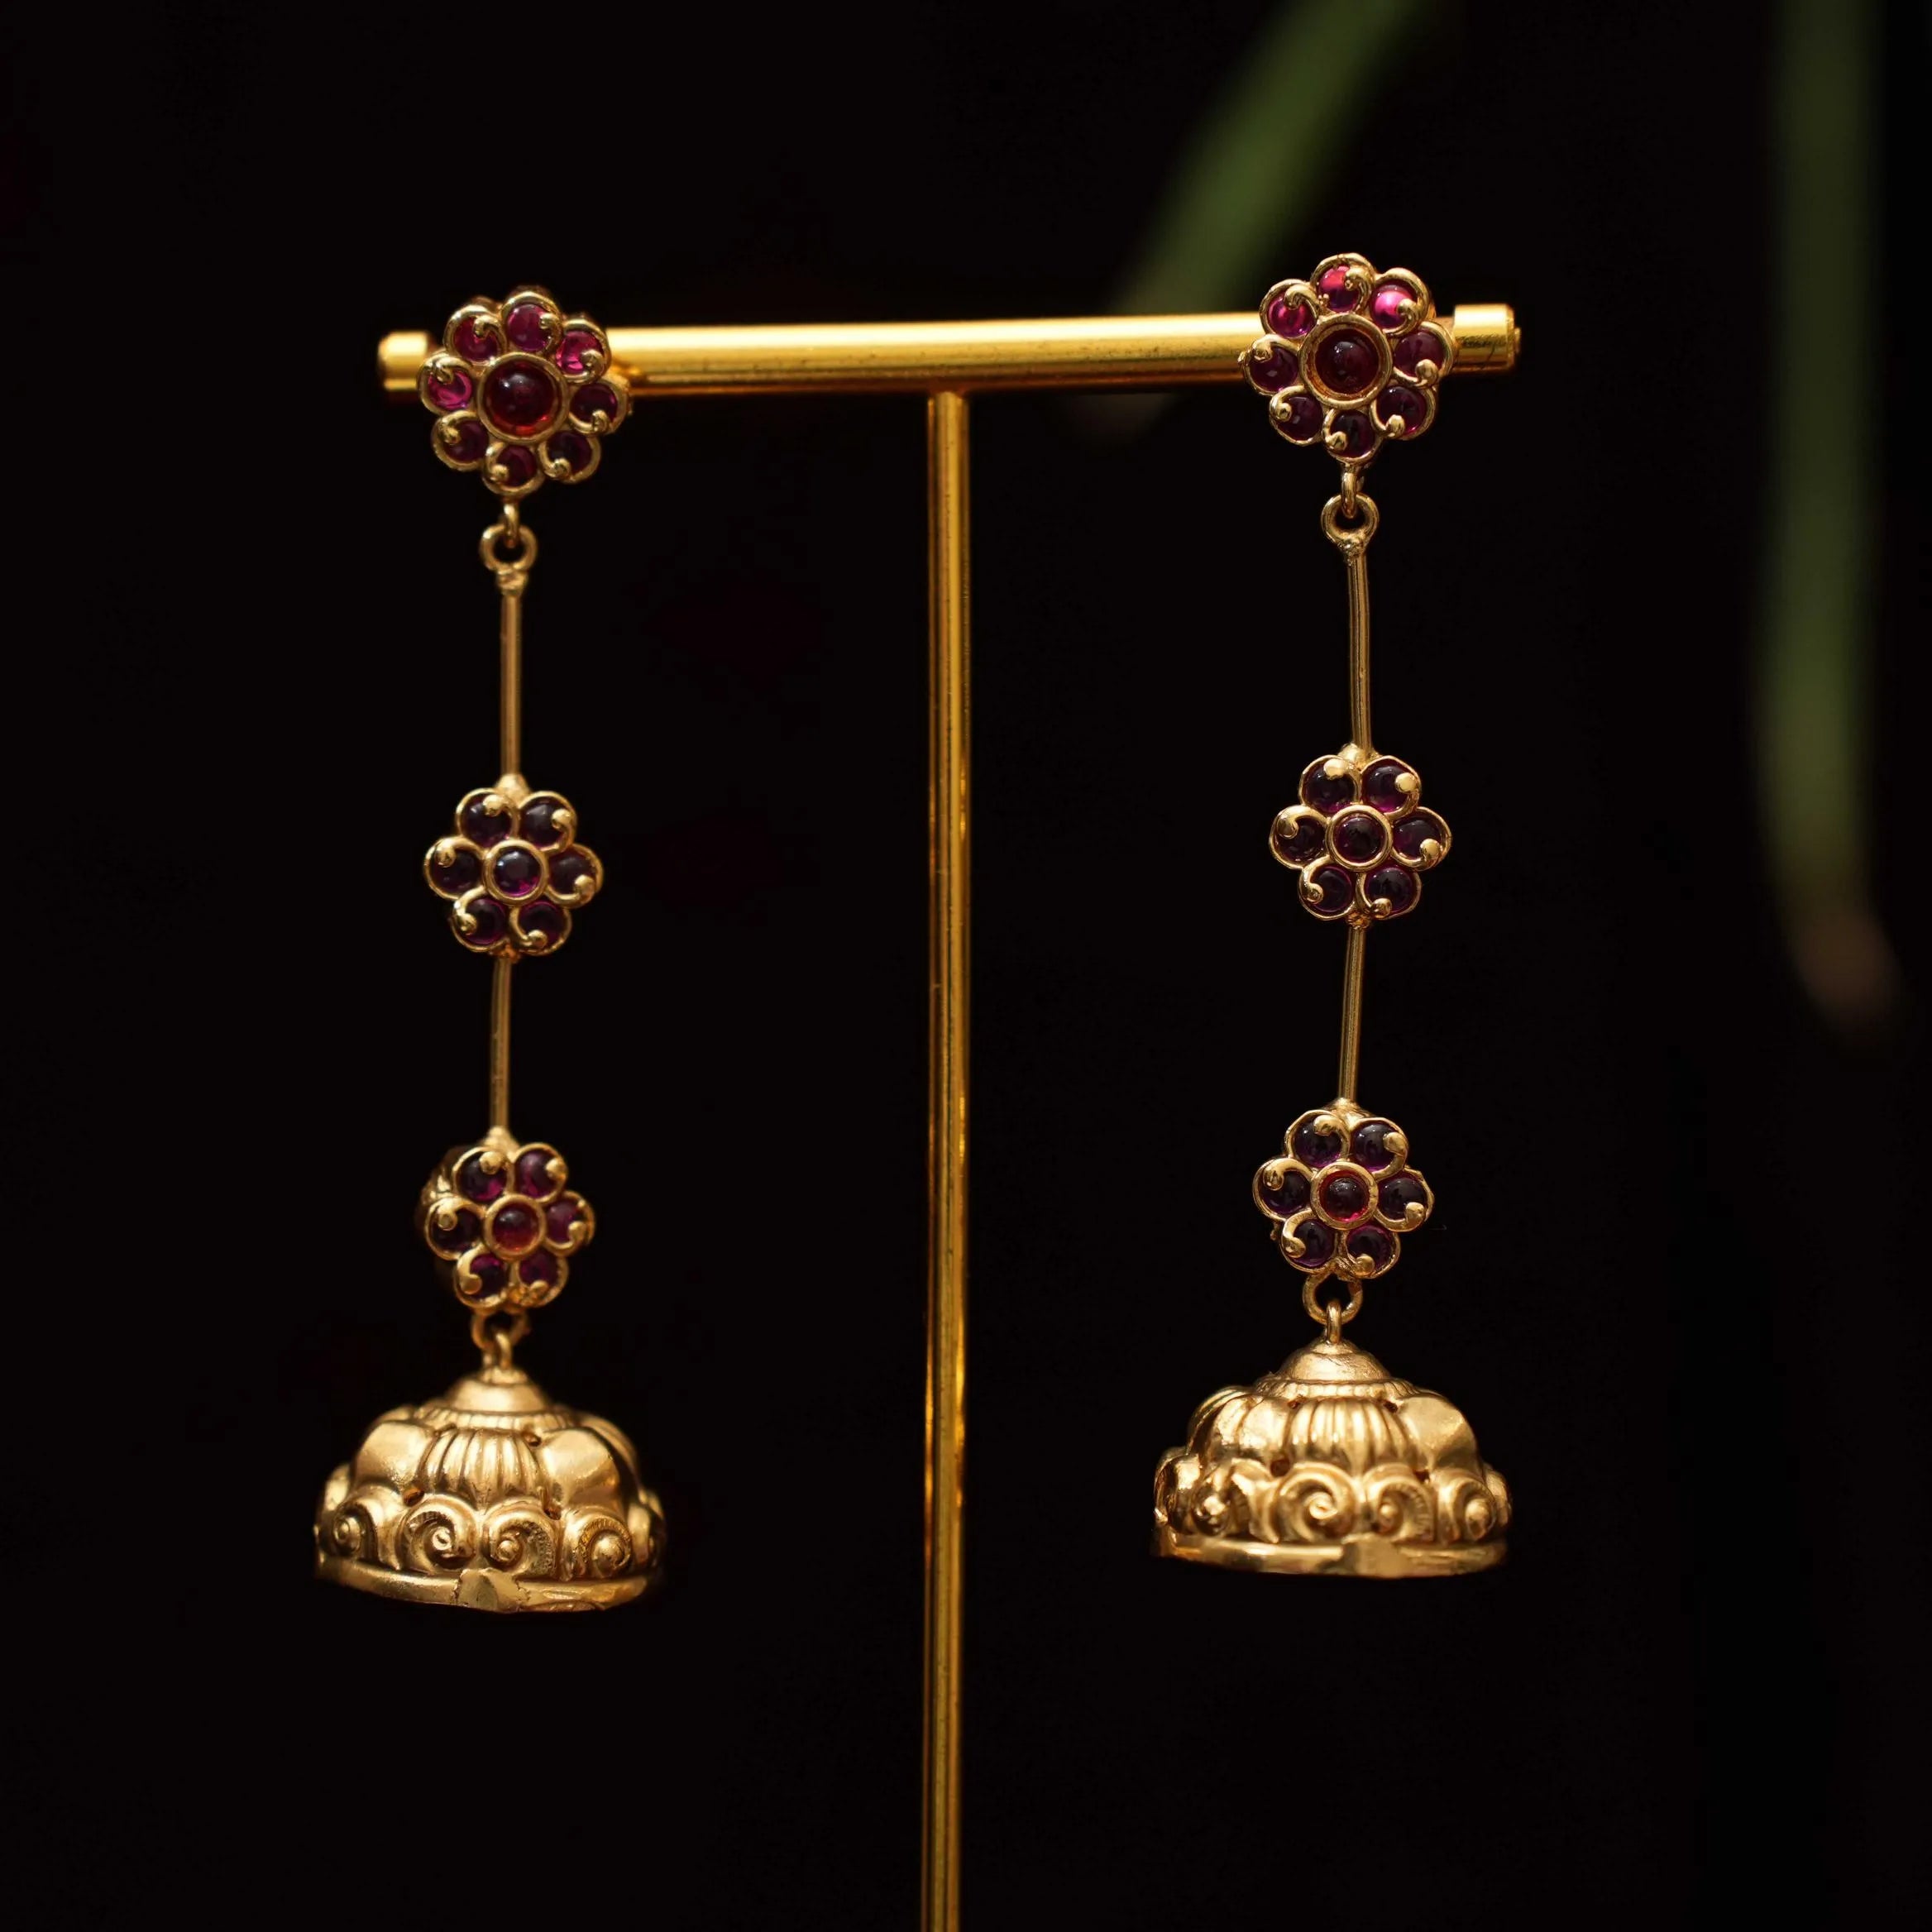 Pearla long earrings at Rs 1480.00, Chennai